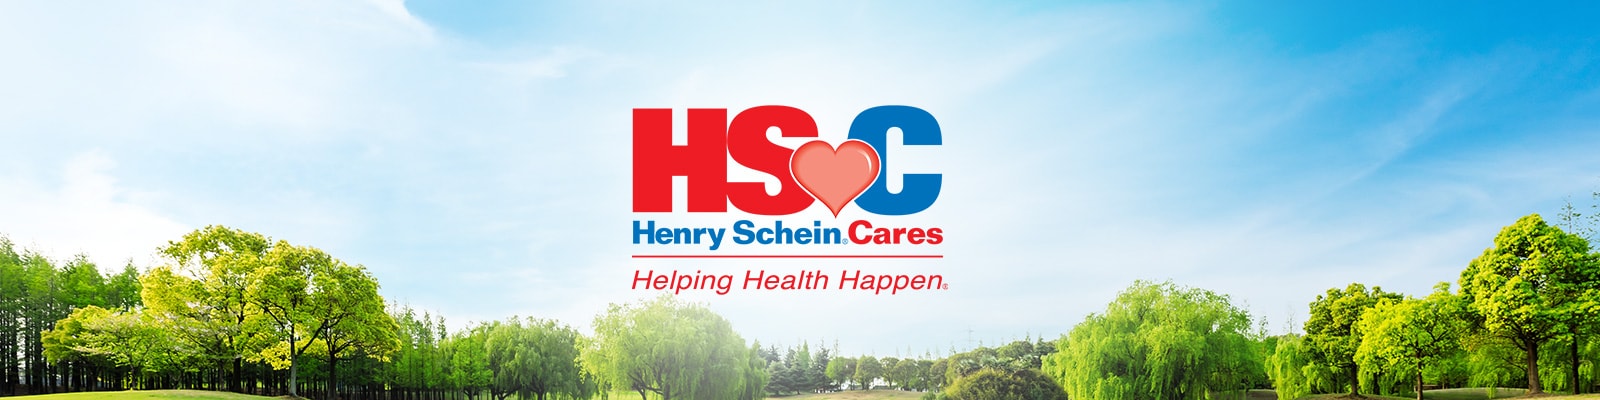 Henry Schein Cares